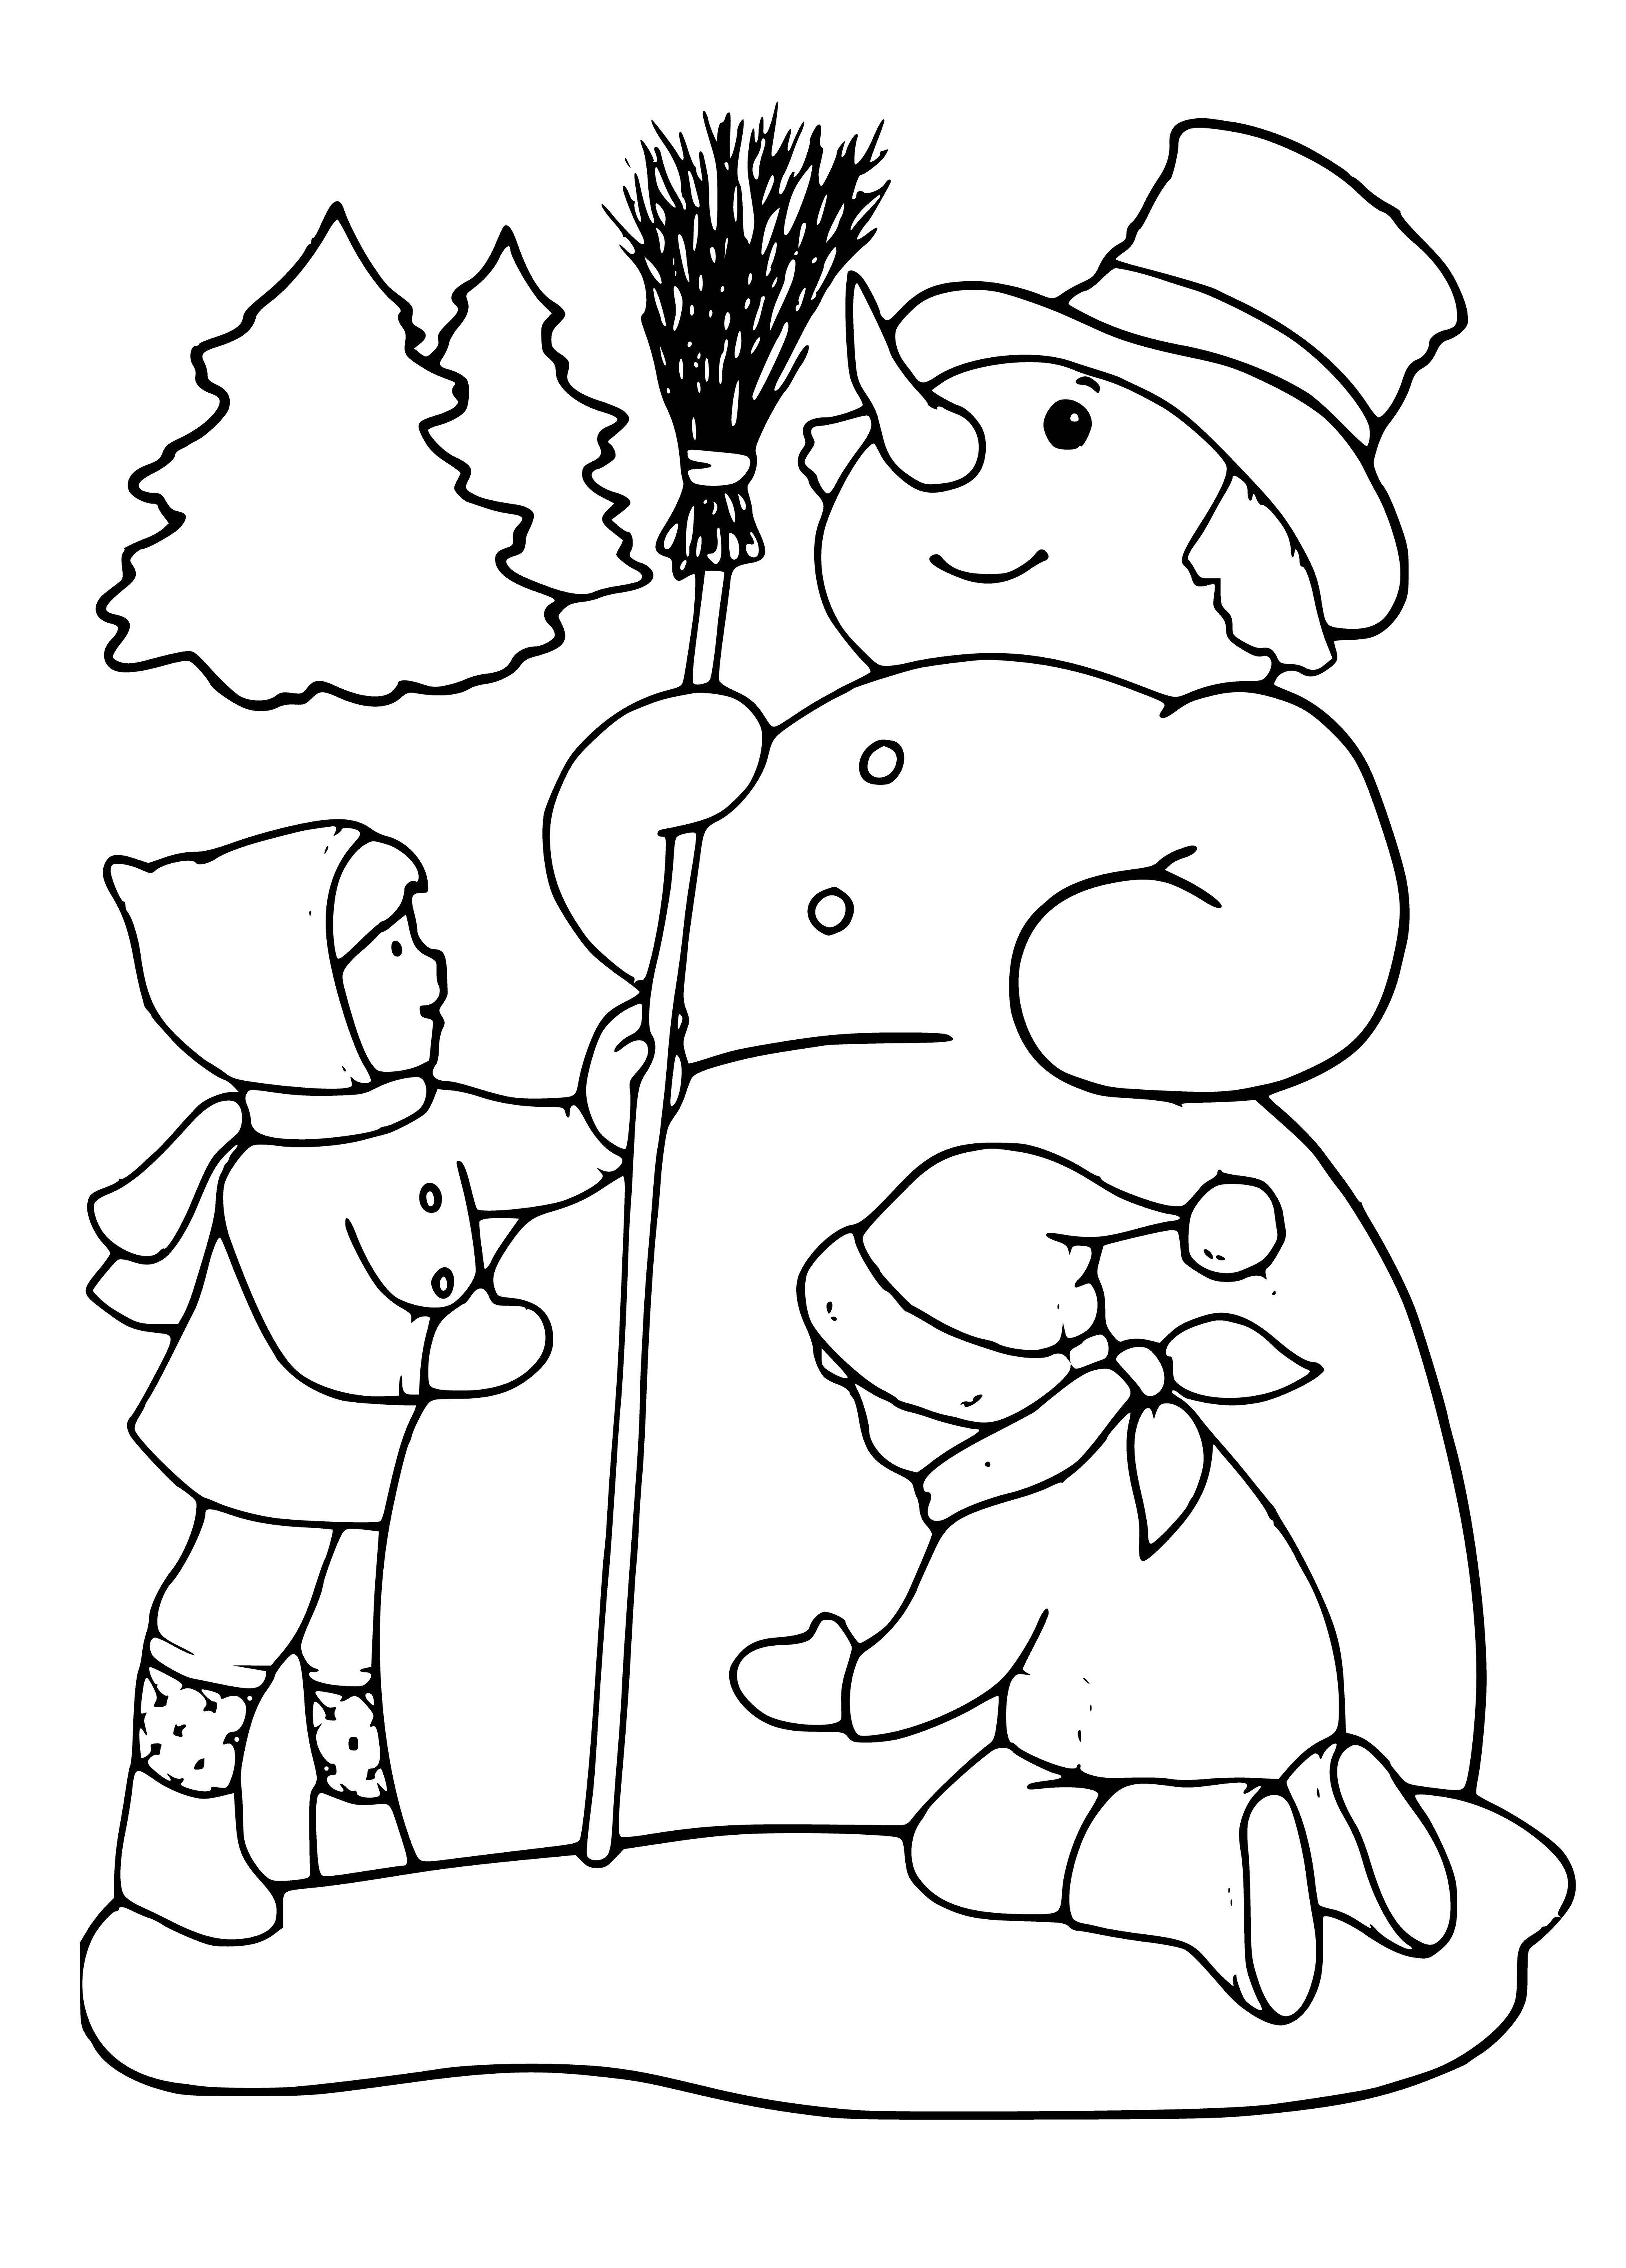 Les enfants font un bonhomme de neige coloriage